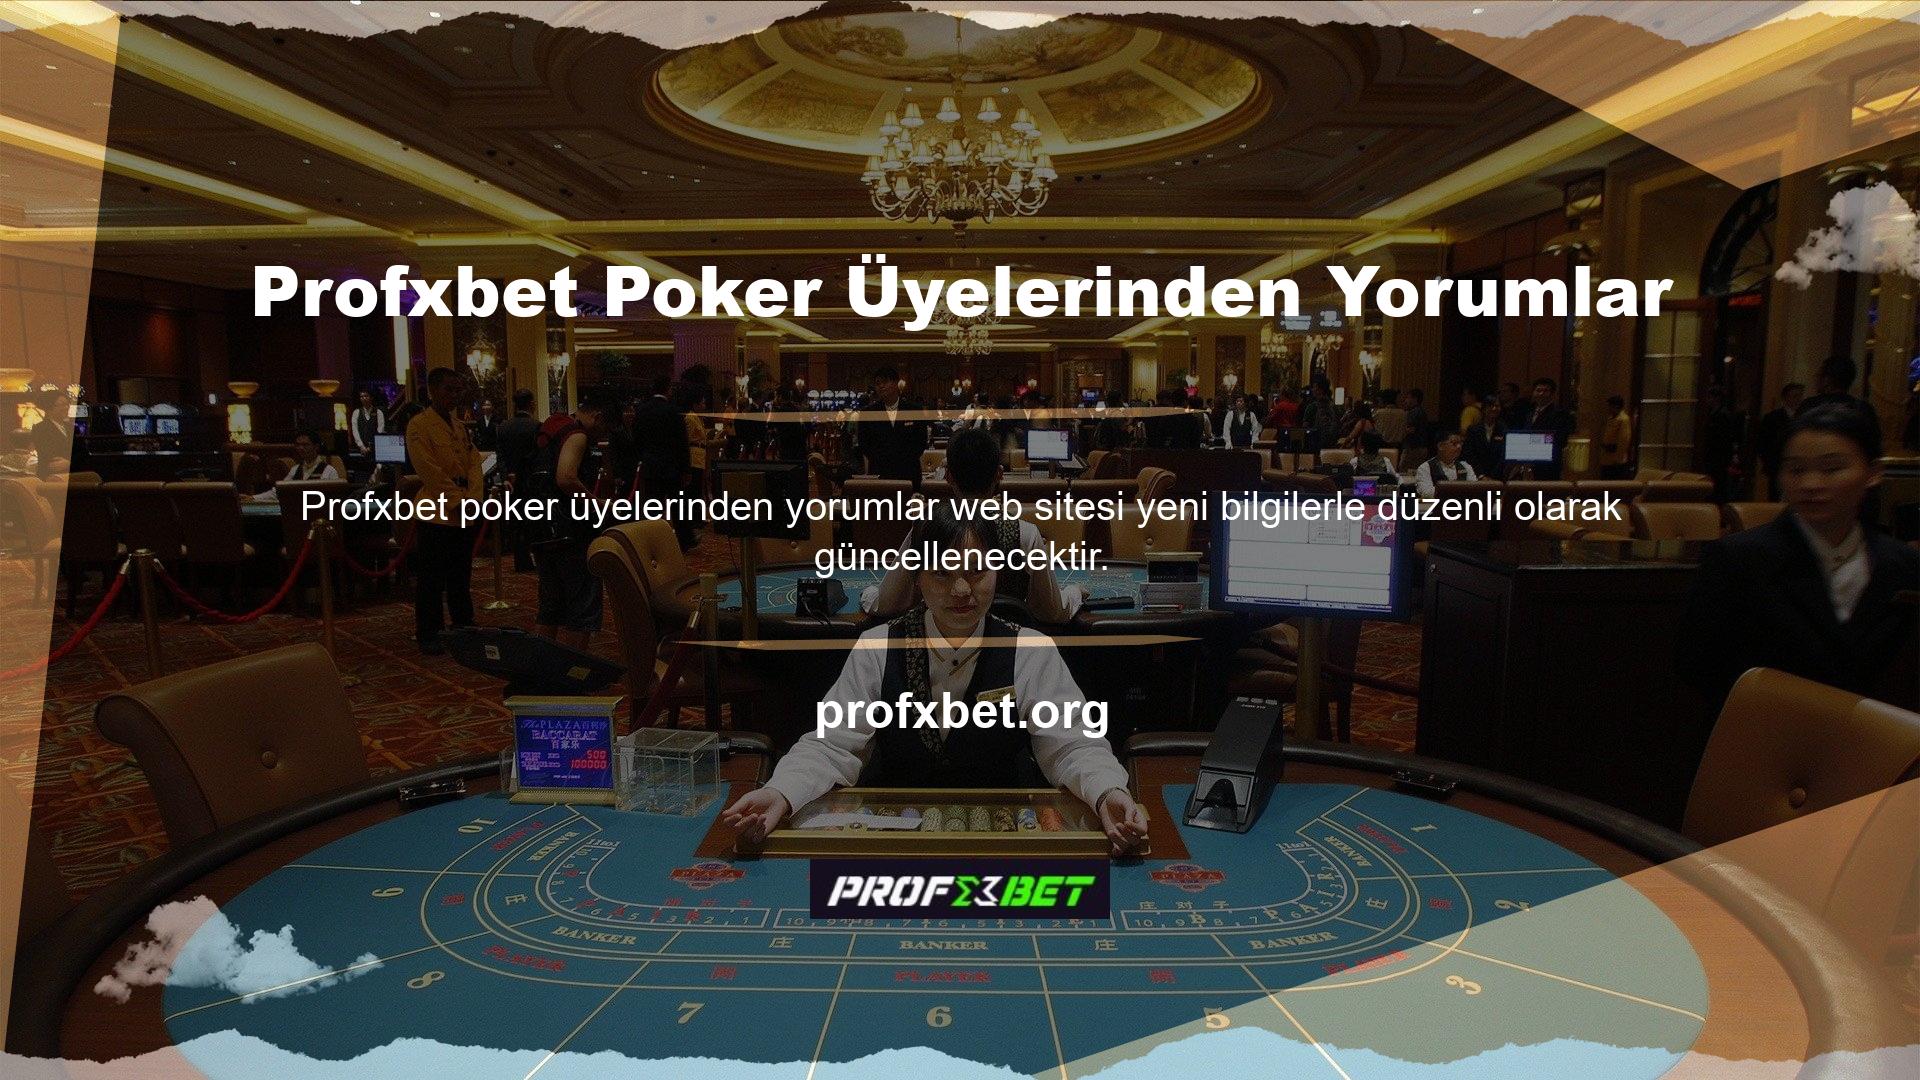 Site ayrıca Profxbet poker üyelerinin yorumlarına yönelik bir turnuvaya da ev sahipliği yapıyor